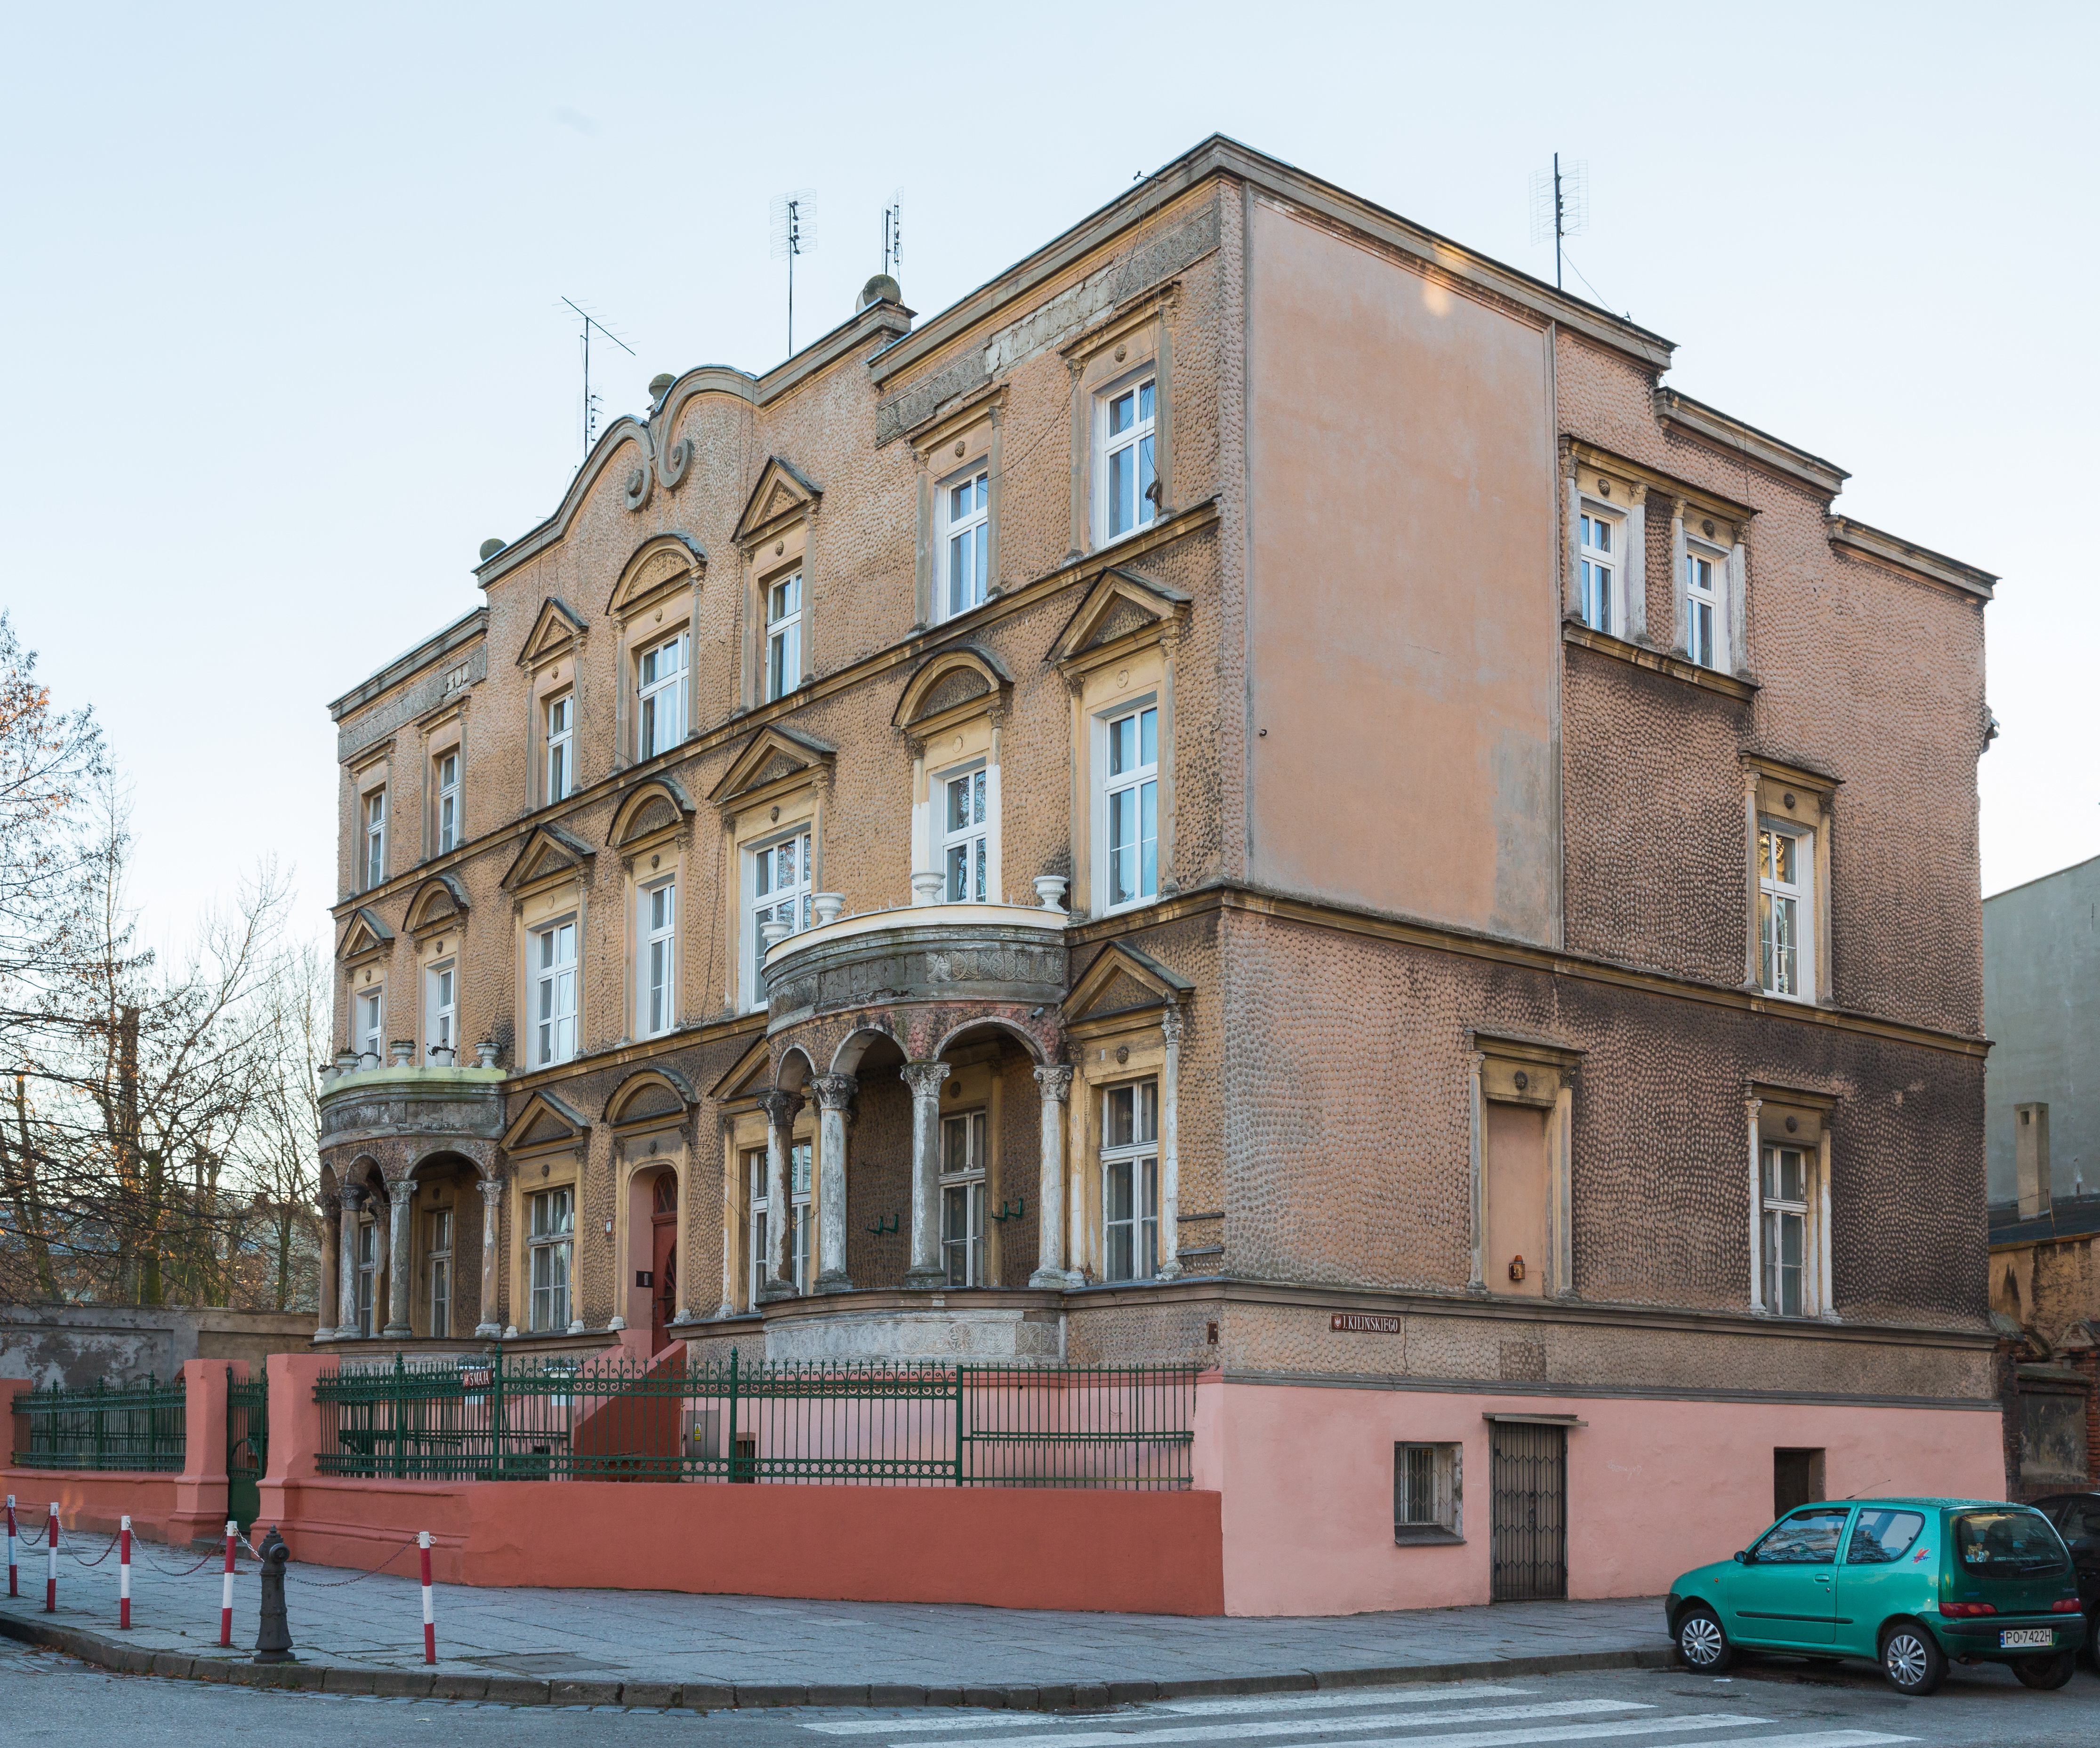 Edificio en la calle 3 de Mayo 9, Gniezno, Polonia, 2014-12-26, DD 06